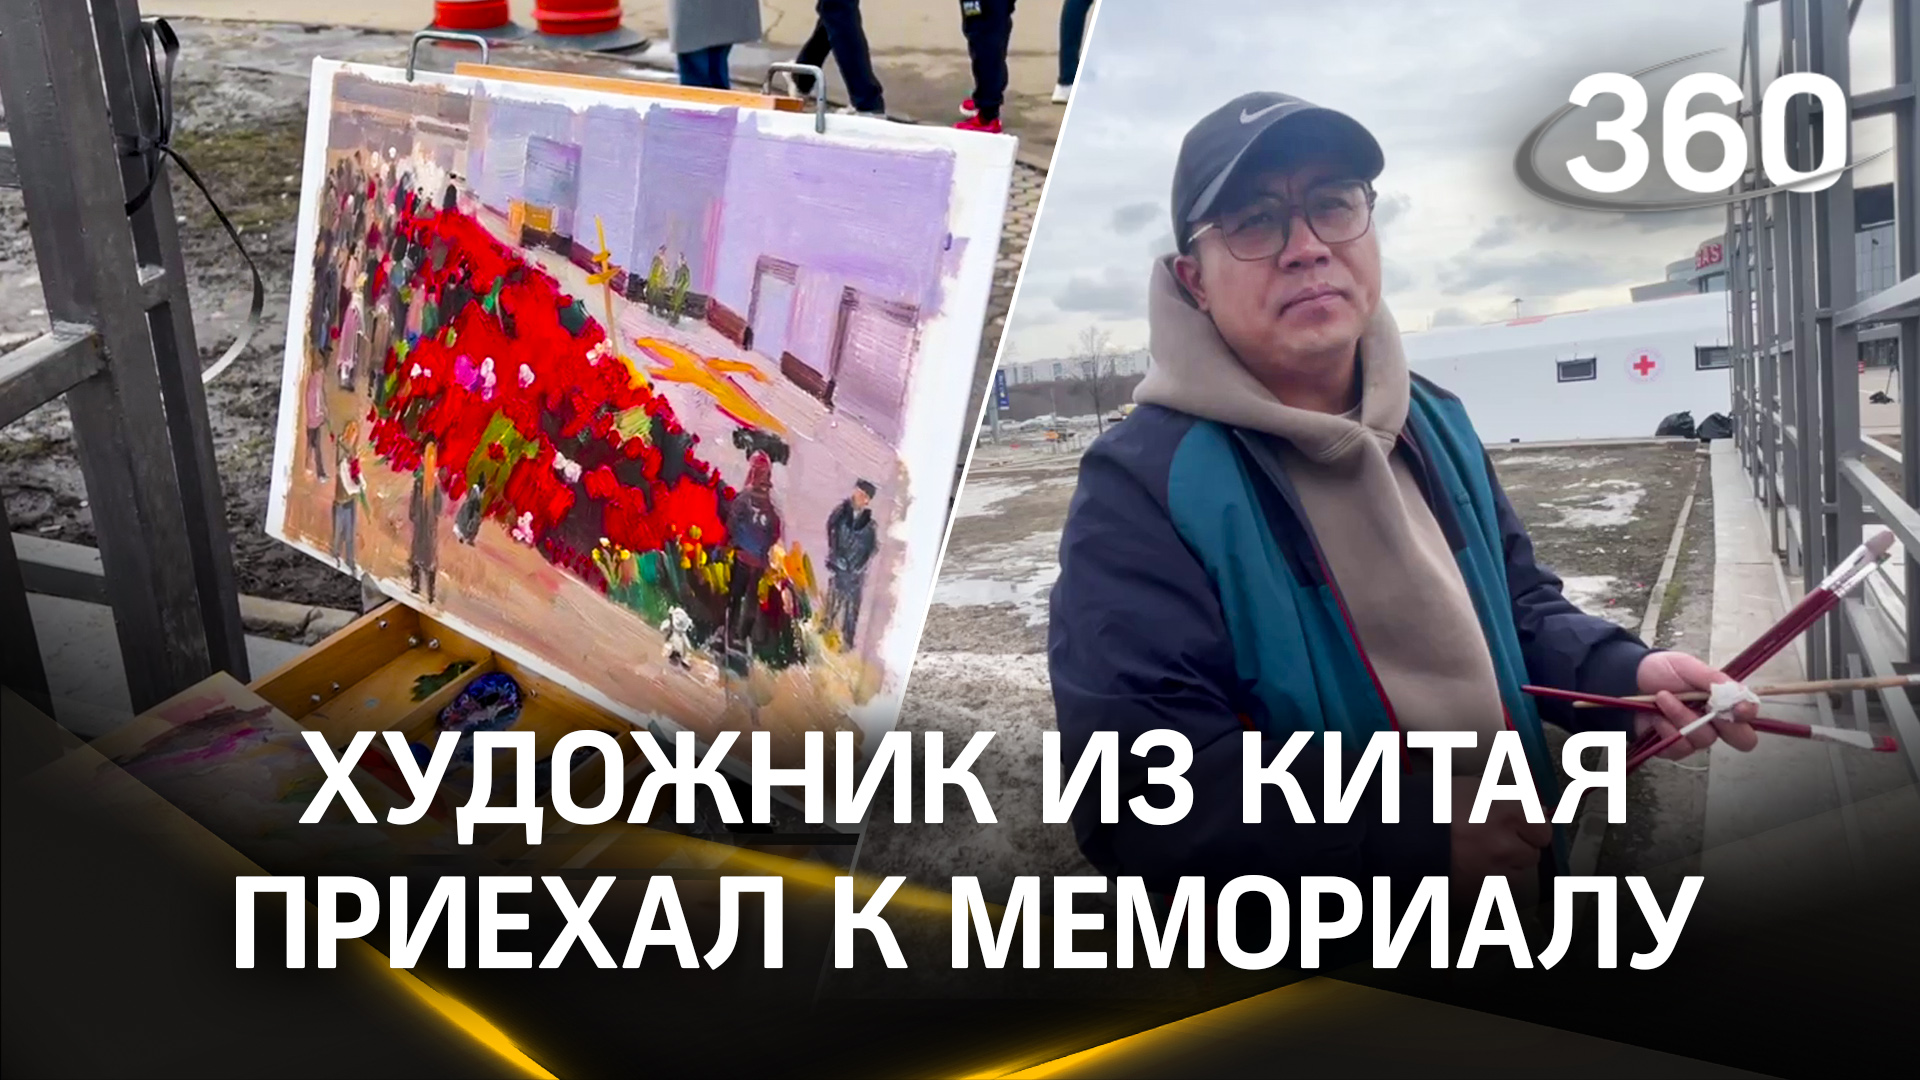 Китайский художник приехал к мемориалу памяти у Крокуса